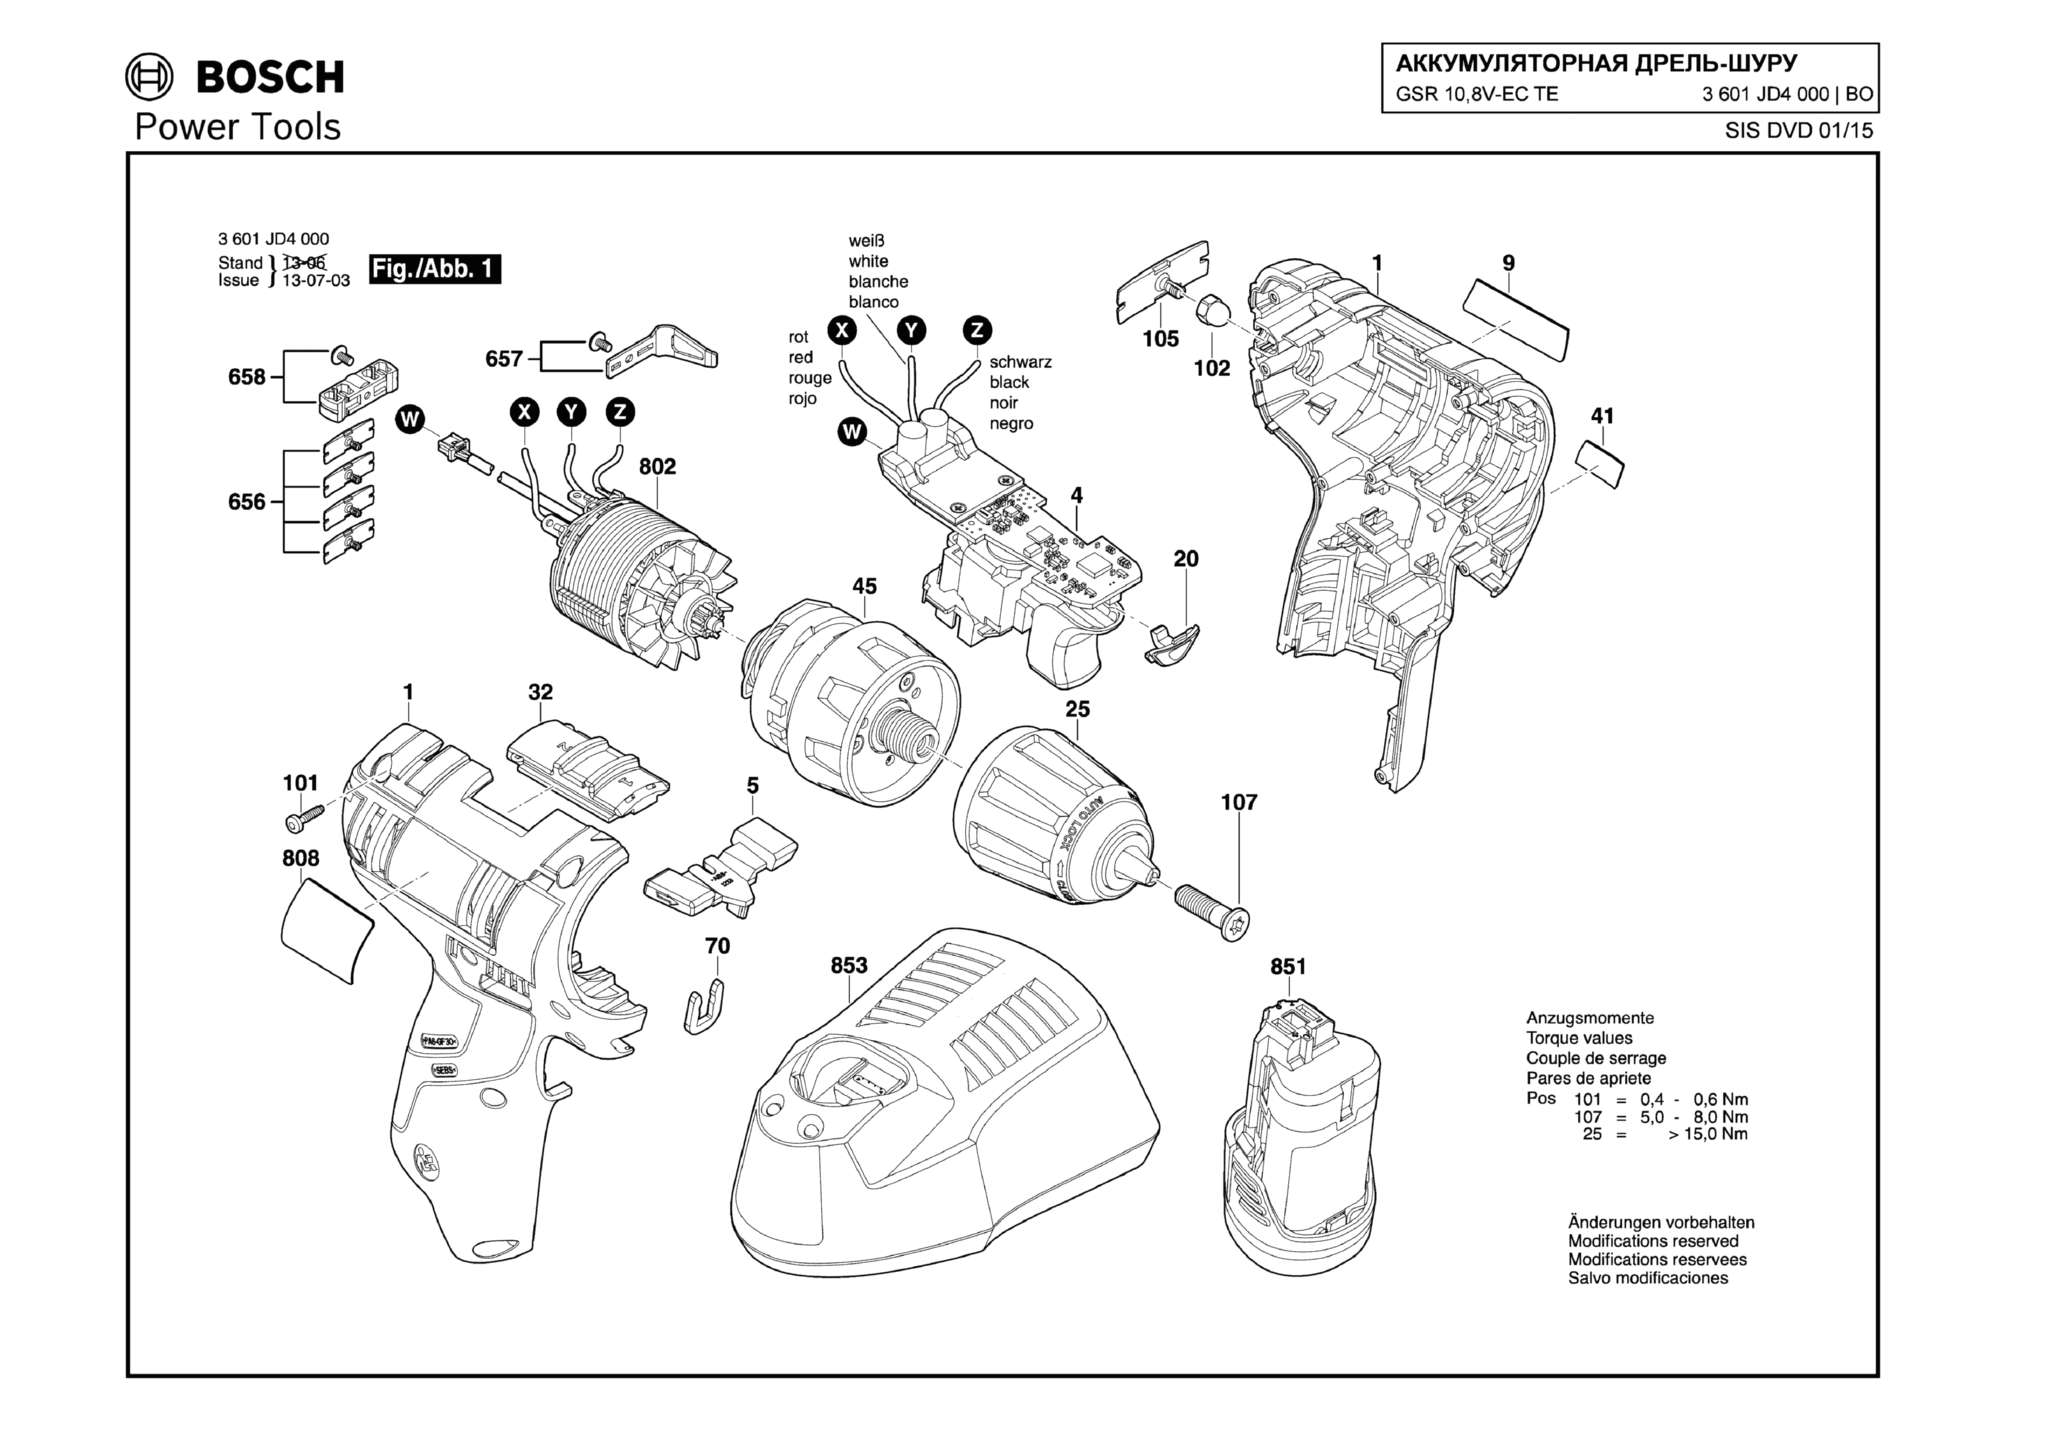 Запчасти, схема и деталировка Bosch GSR 10,8V-EC TE (ТИП 3601JD4000)